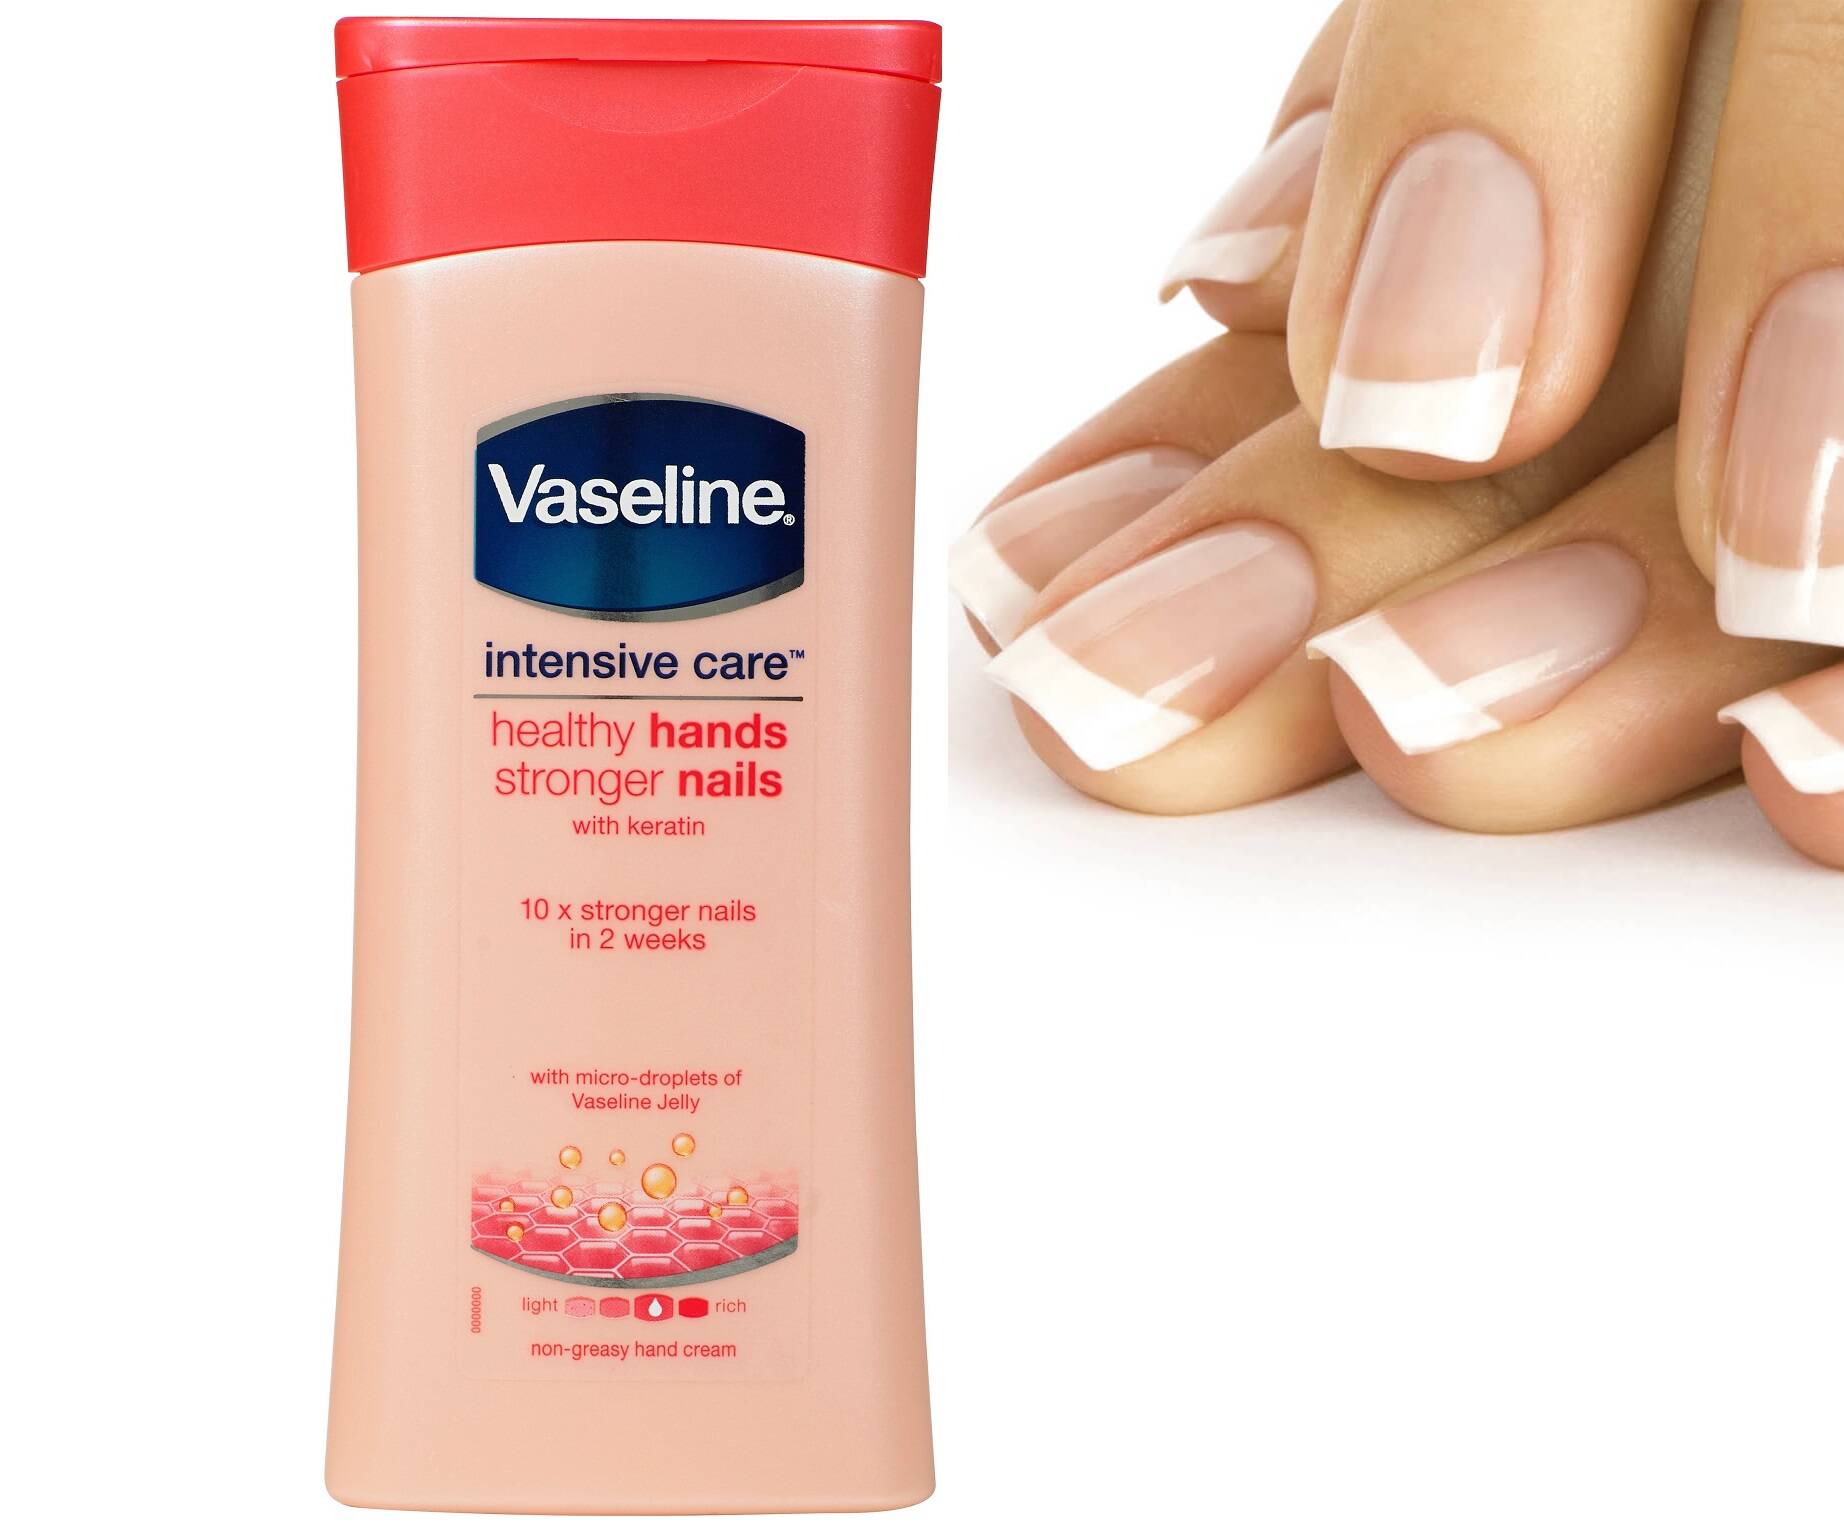 لوسیون دست و ناخن کراتینه وازلین (Vaseline Hands Nails Lotion)